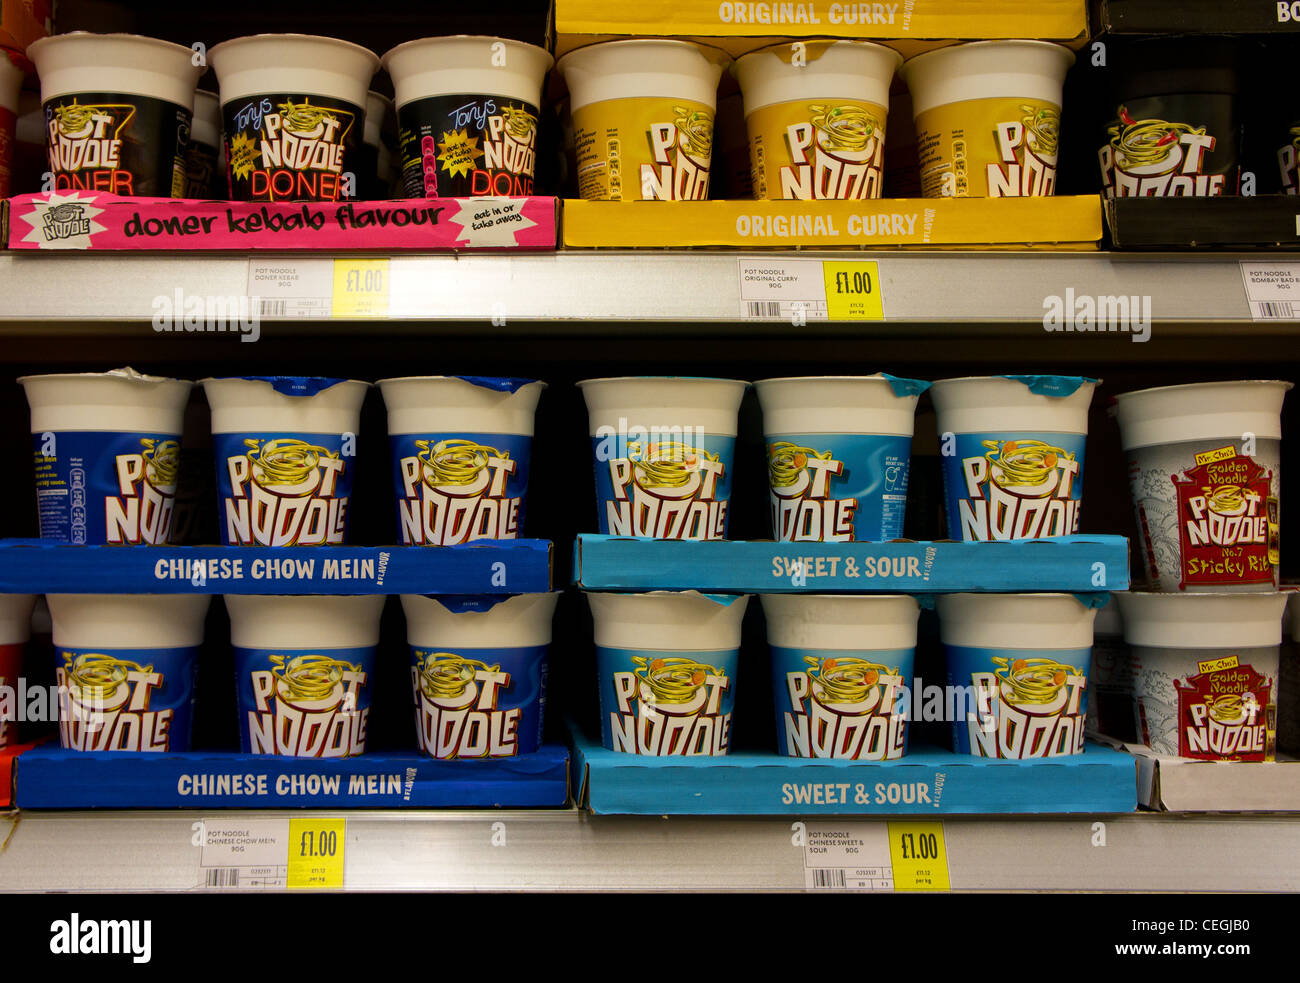 Golden Wonder Pot Noodles in a UK supermarket Stock Photo